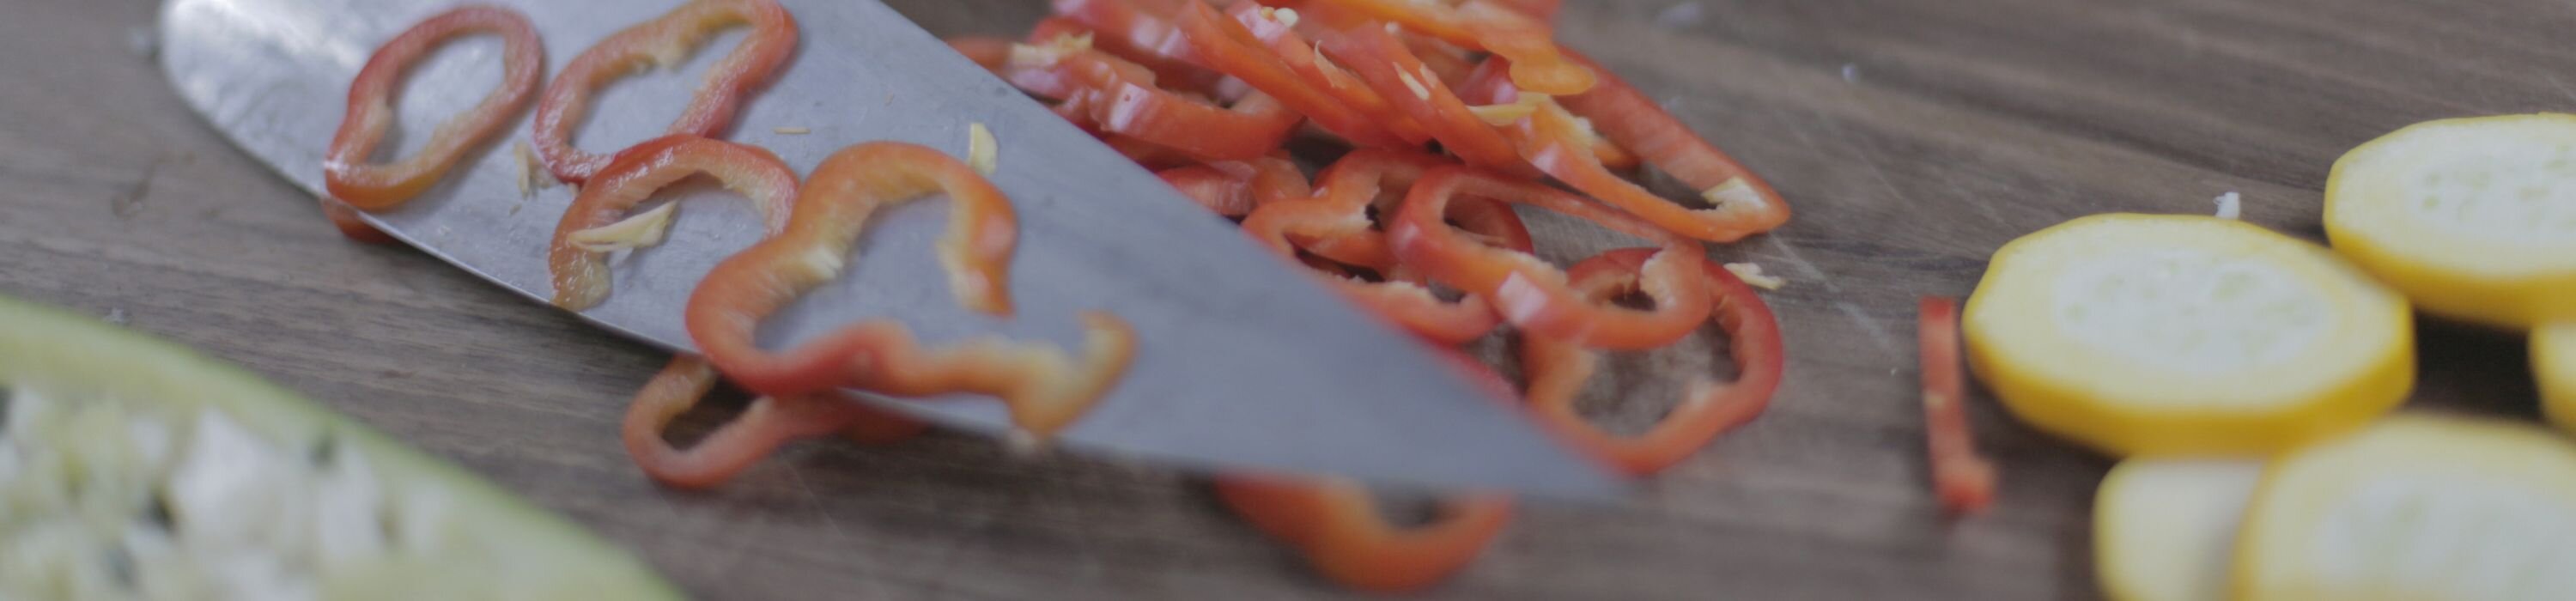 Messerklinge mit dünn geschnittenem Paprika und Gemüse